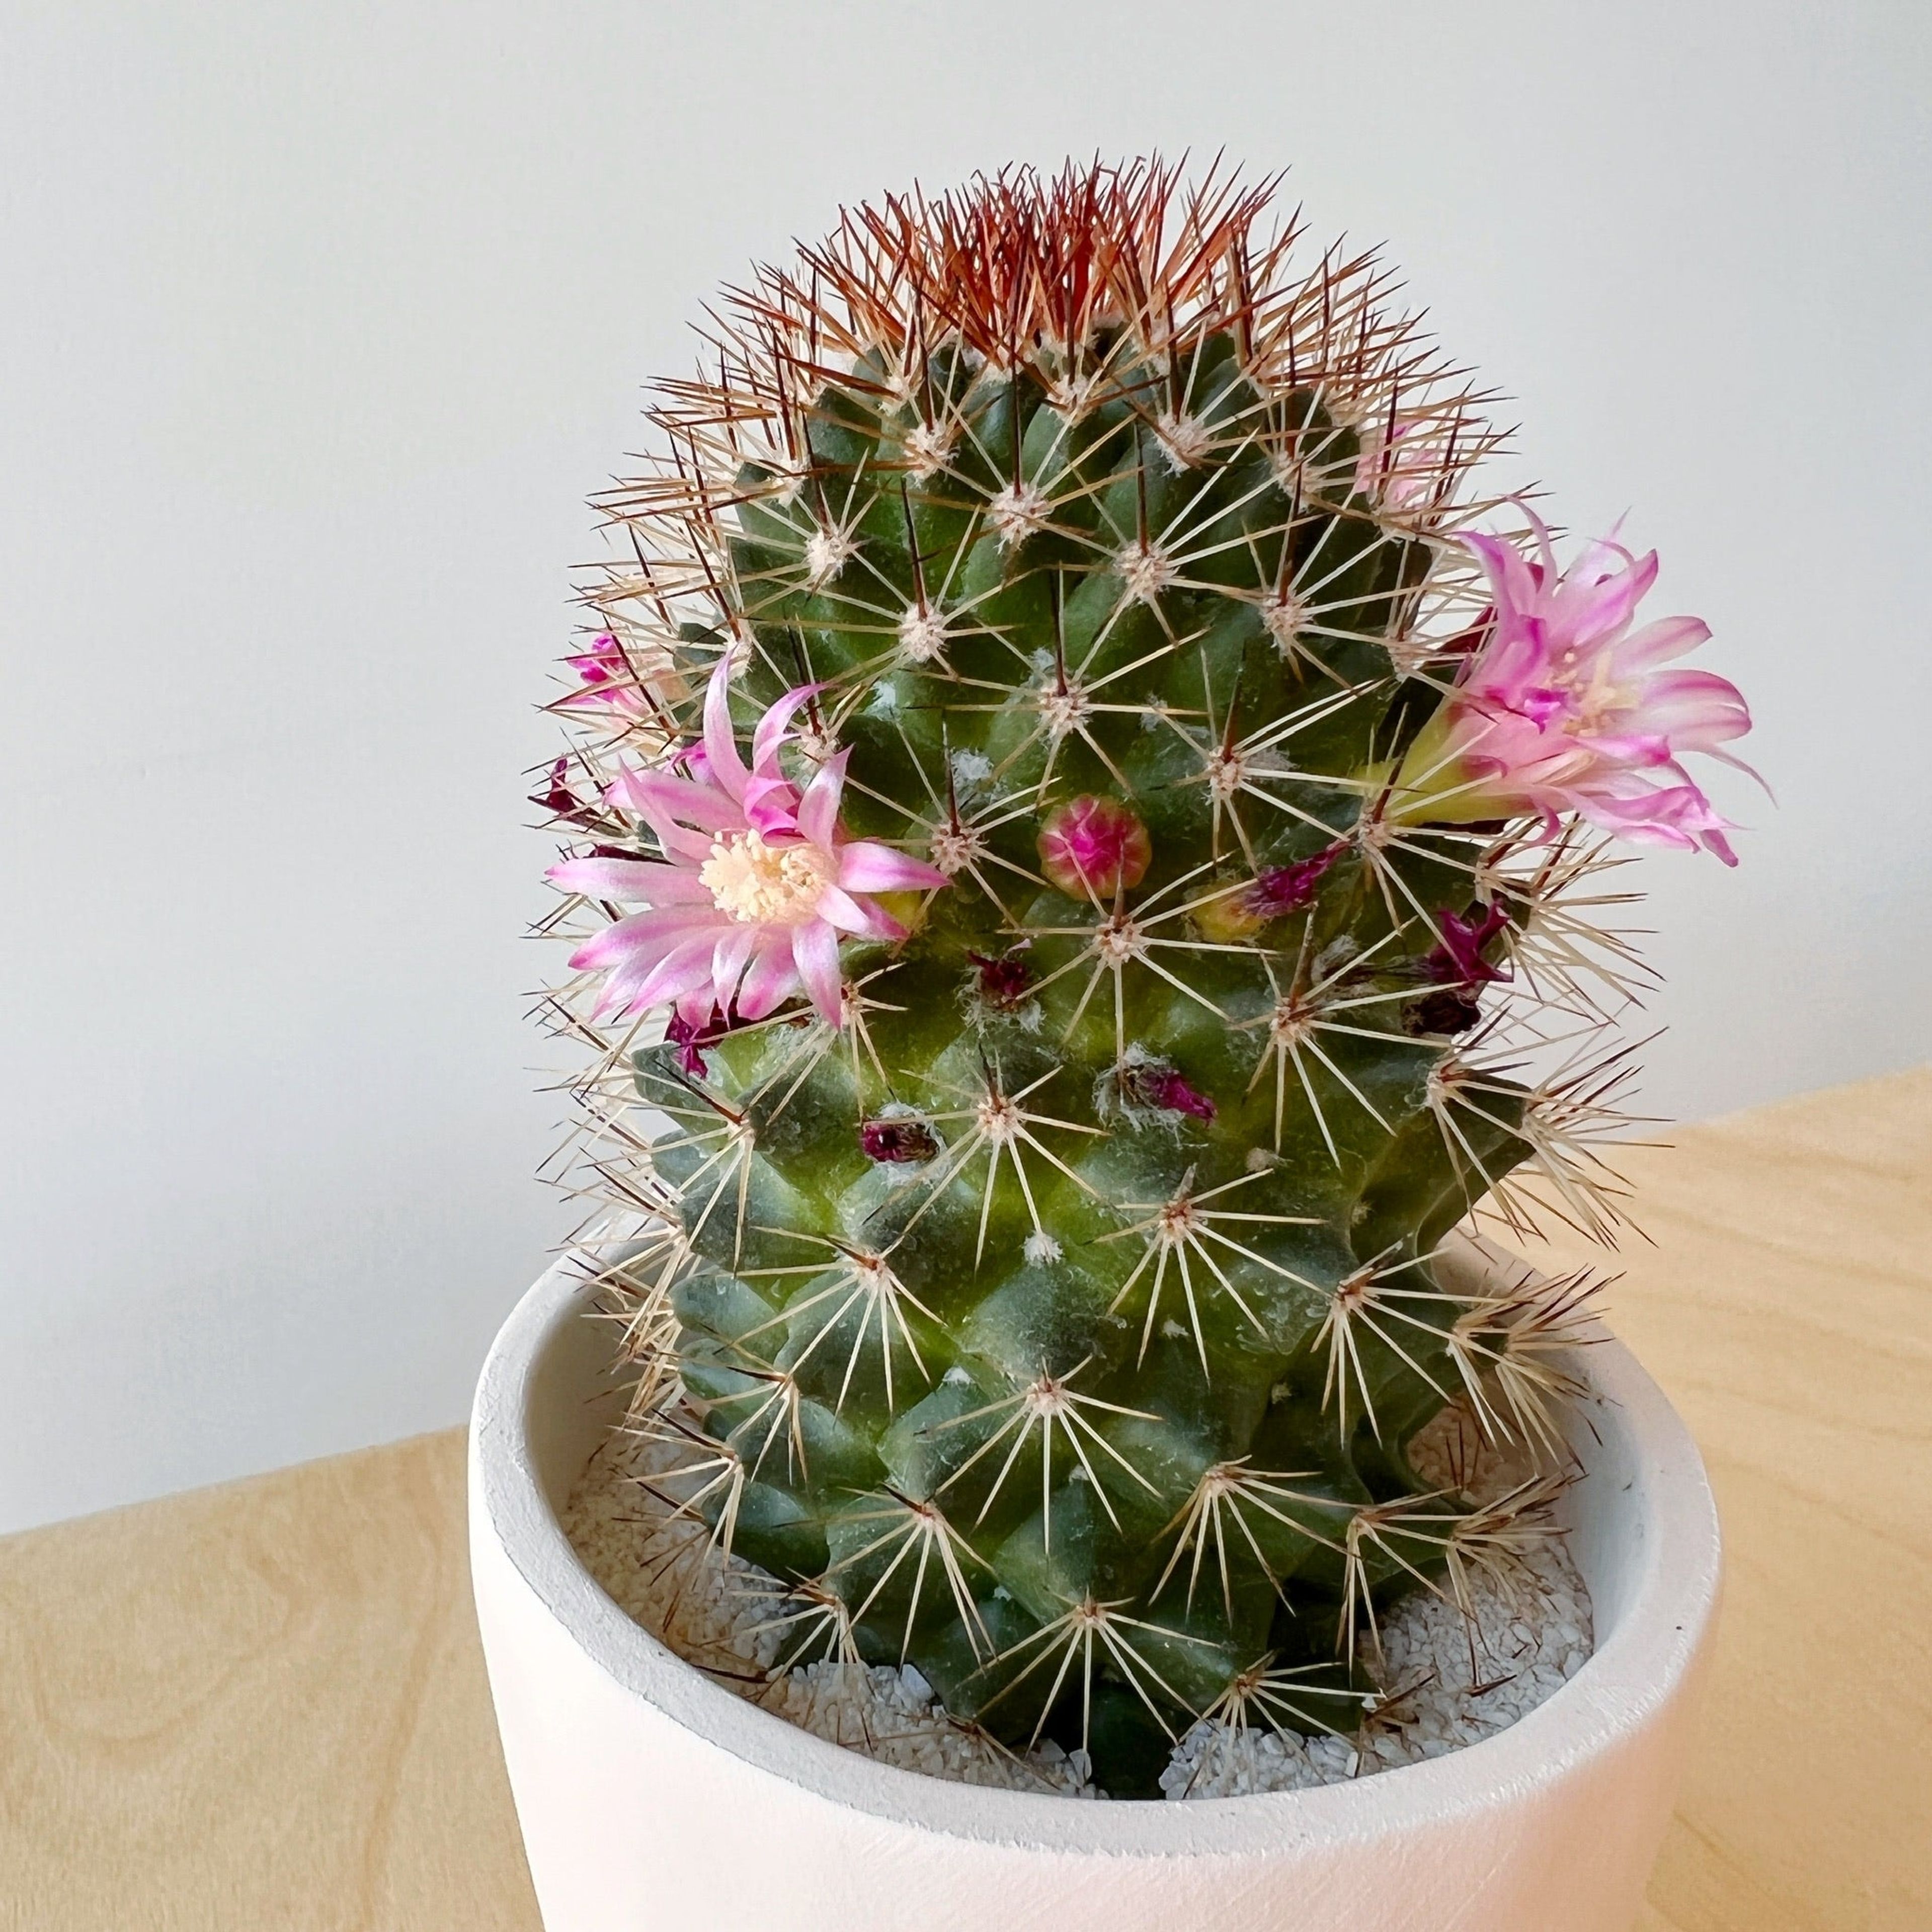 Phillip Cactus + Handmade Ceramic Planter